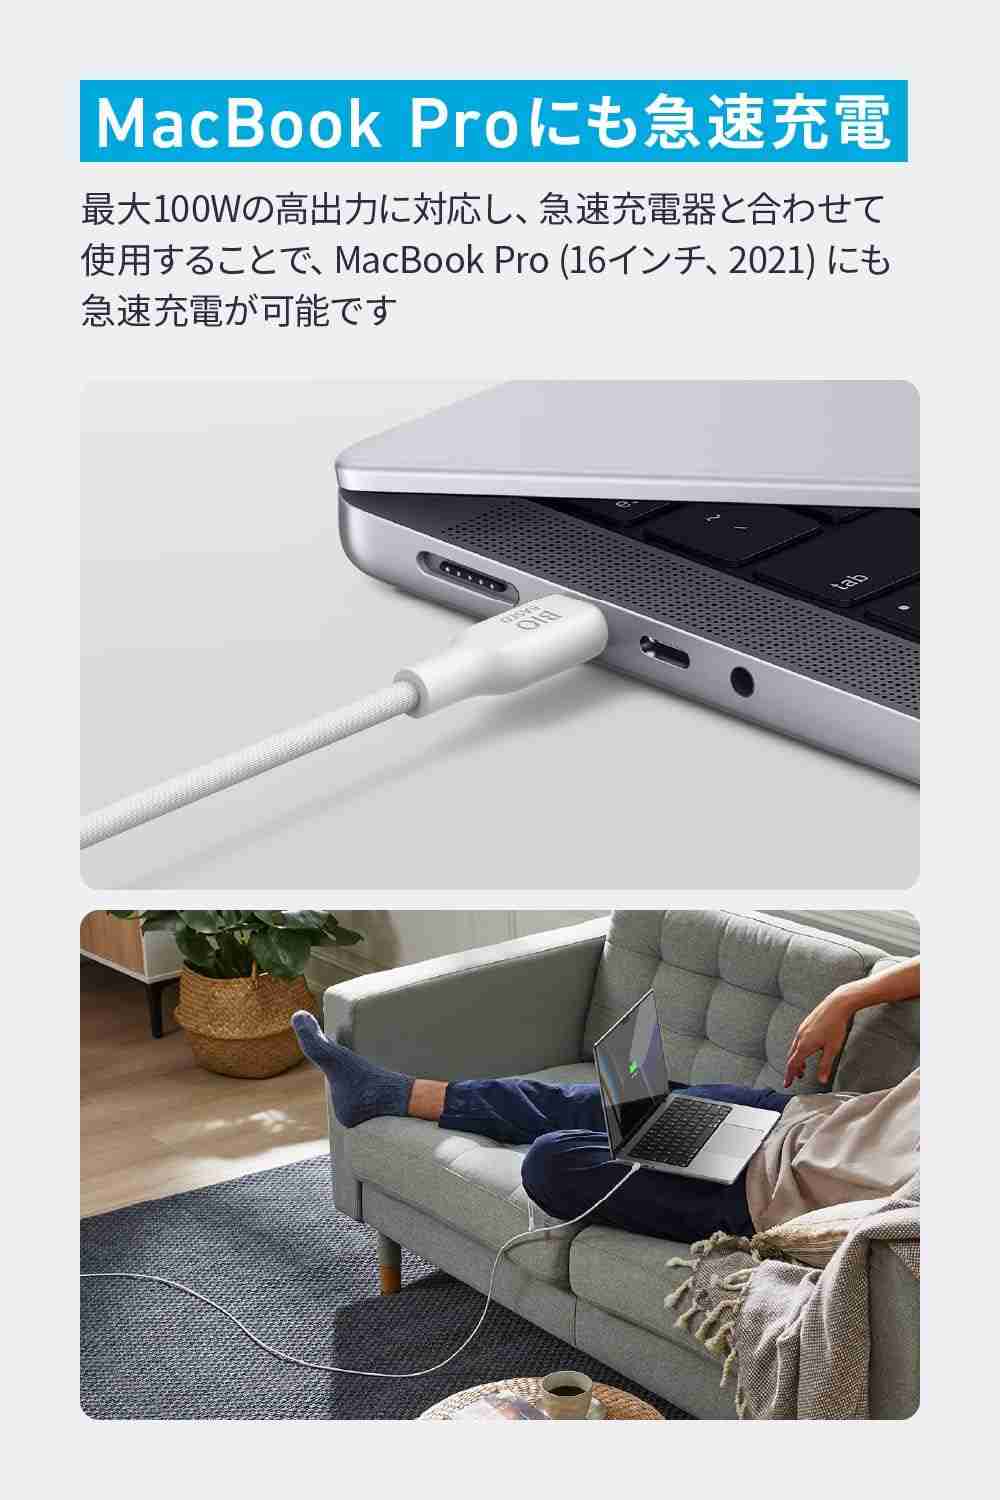 アンカー「Anker 543 エコフレンドリー USB-C & USB-C ケーブル」はMacBook Proにも急速充電